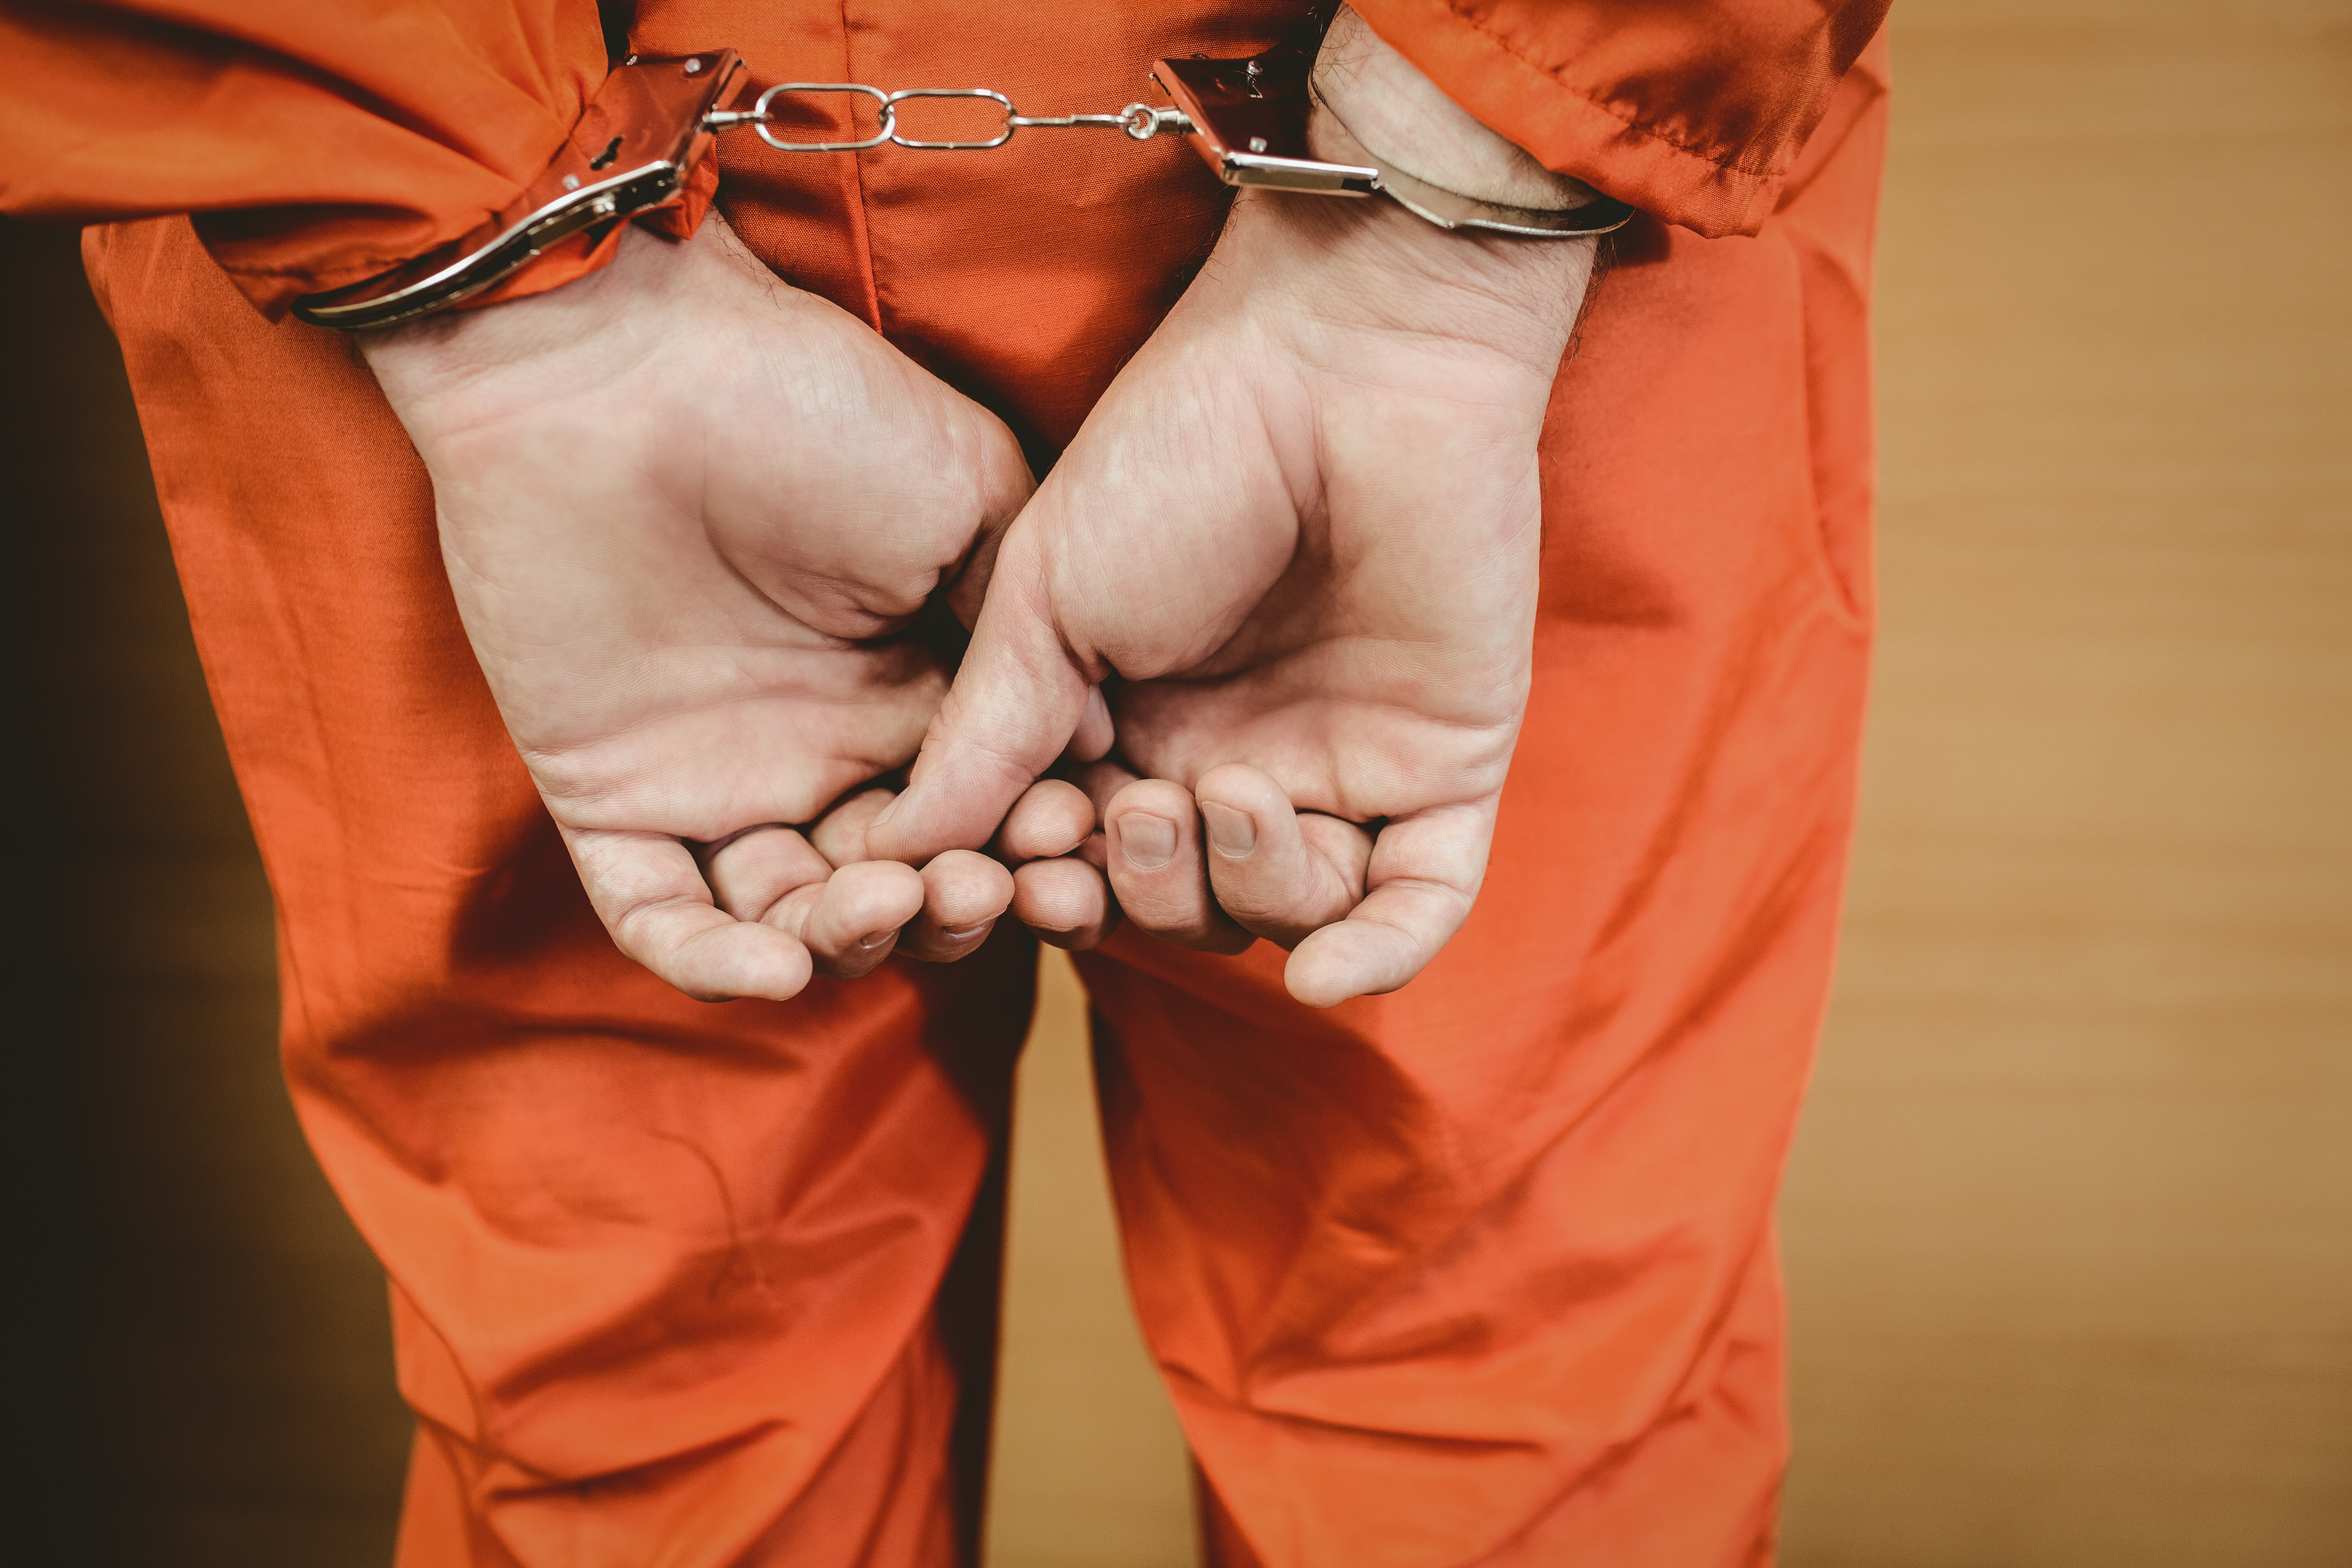 Escaping lawful custody in NSW